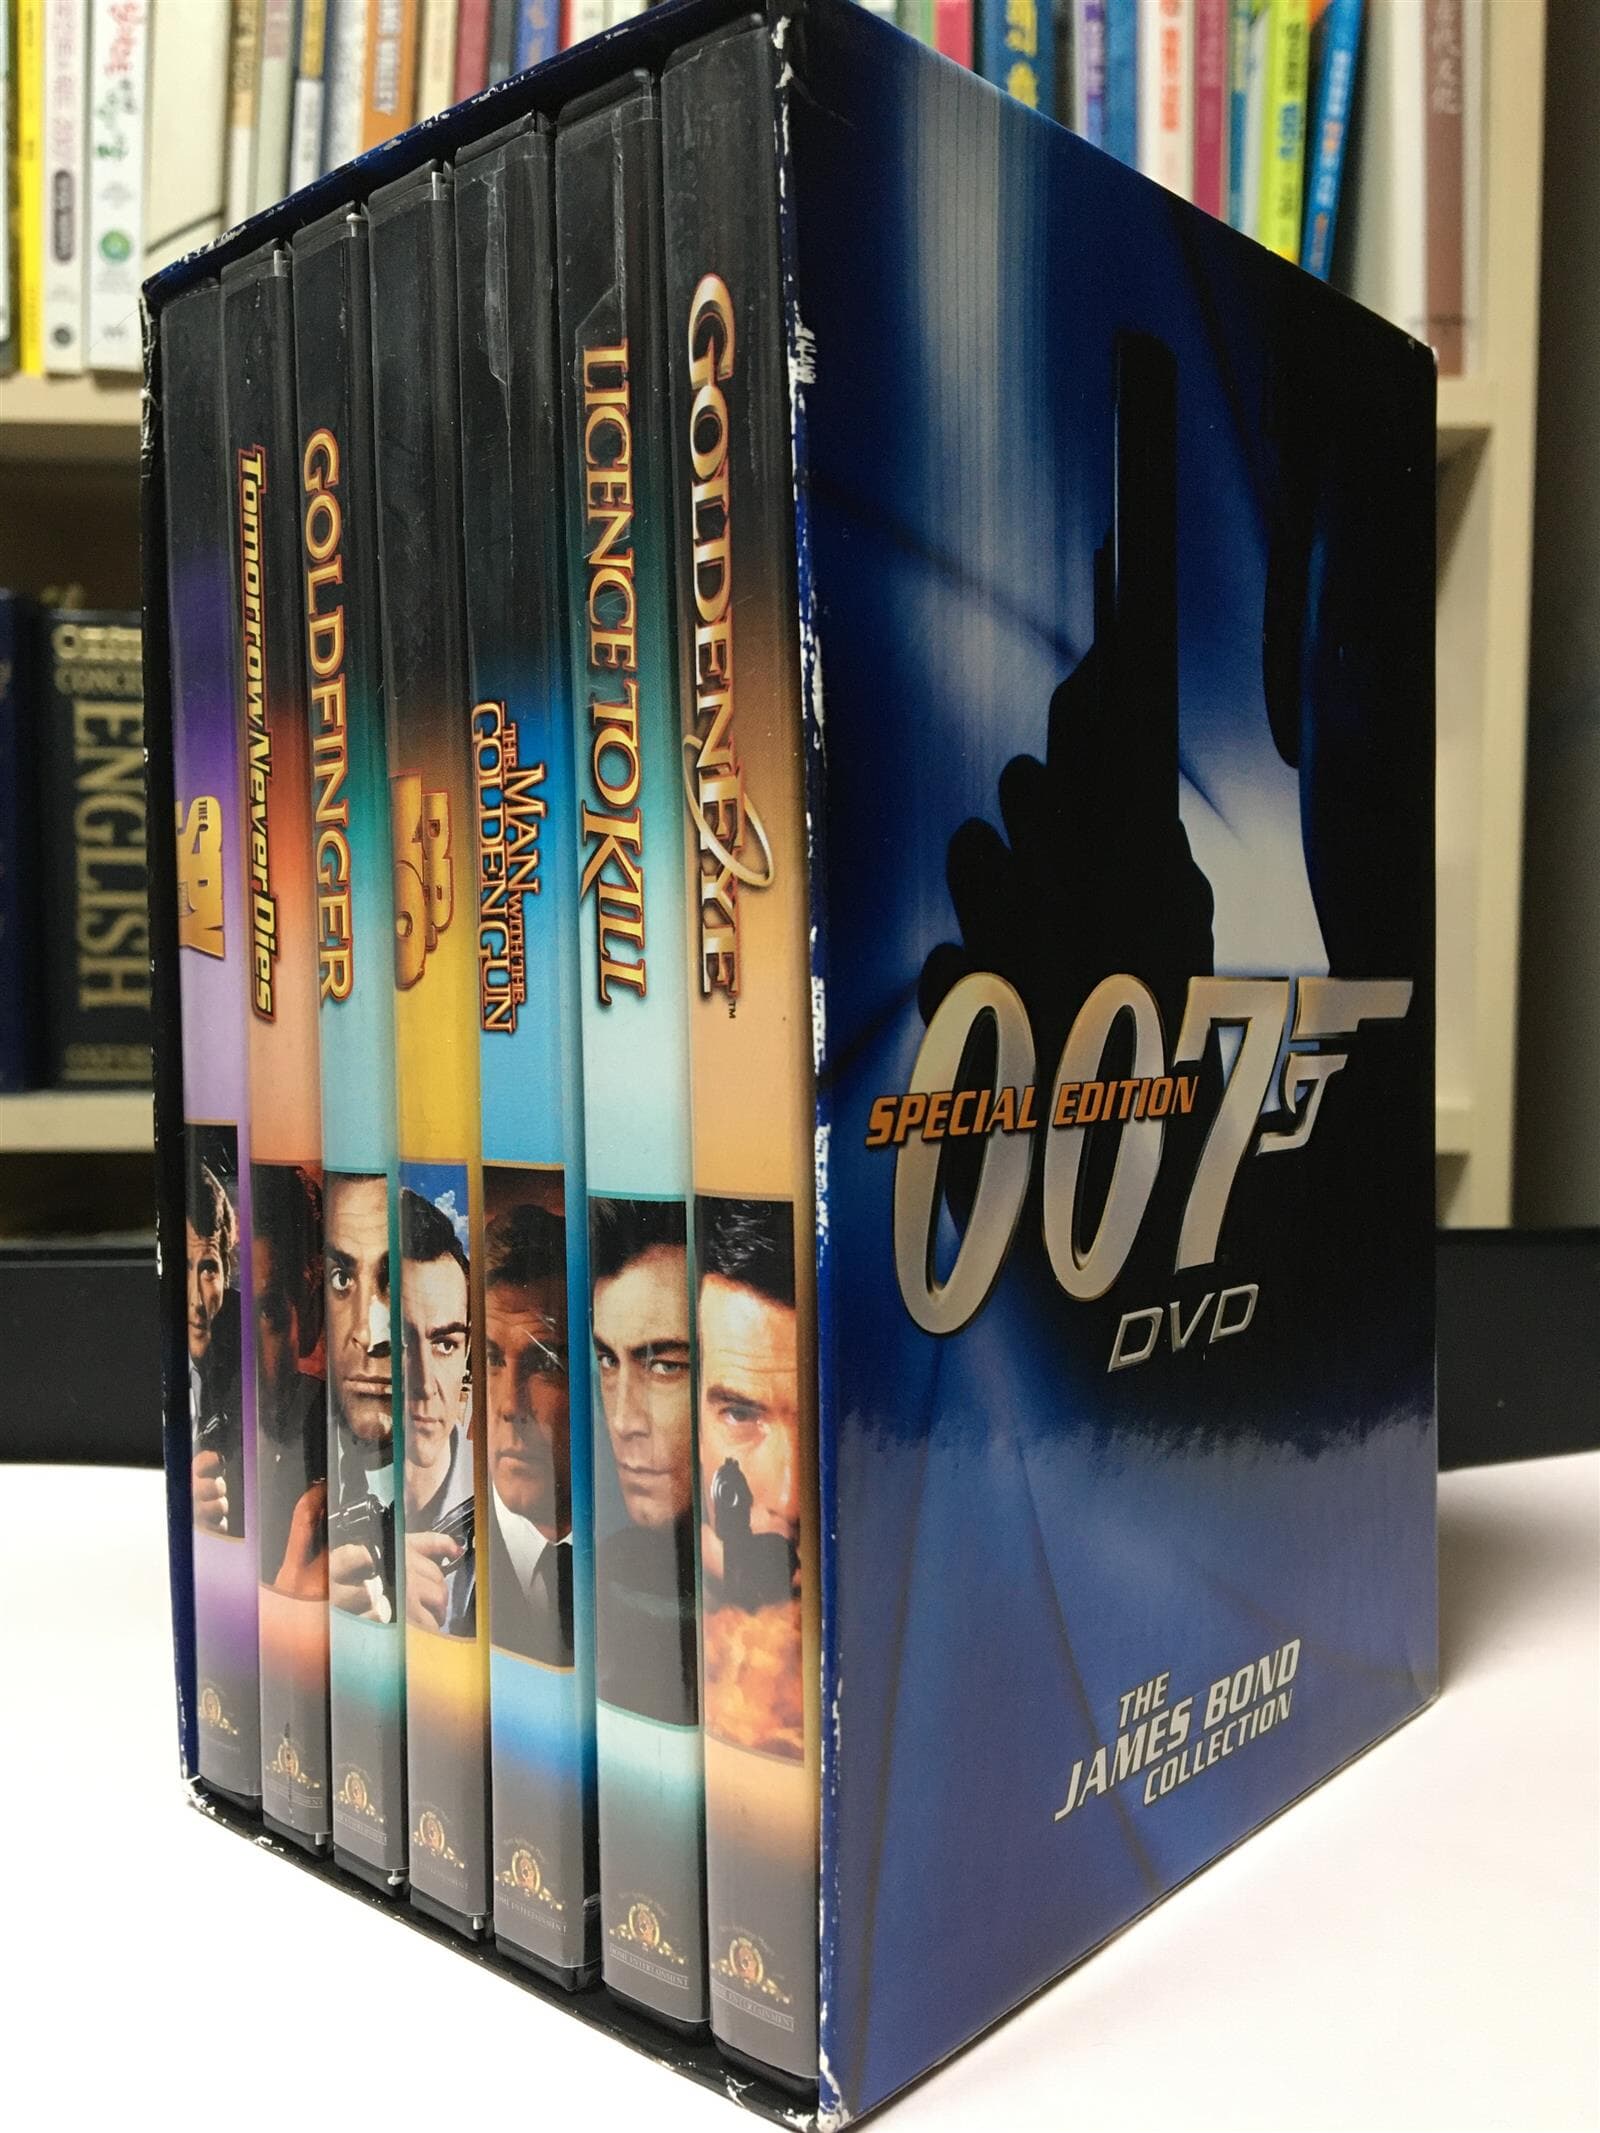 [수입] 007 SPECIAL EDITION 7 DVD SET (THE JAMES BOND COLLECTION)(지역코드1)(한글무자막)(DVD)